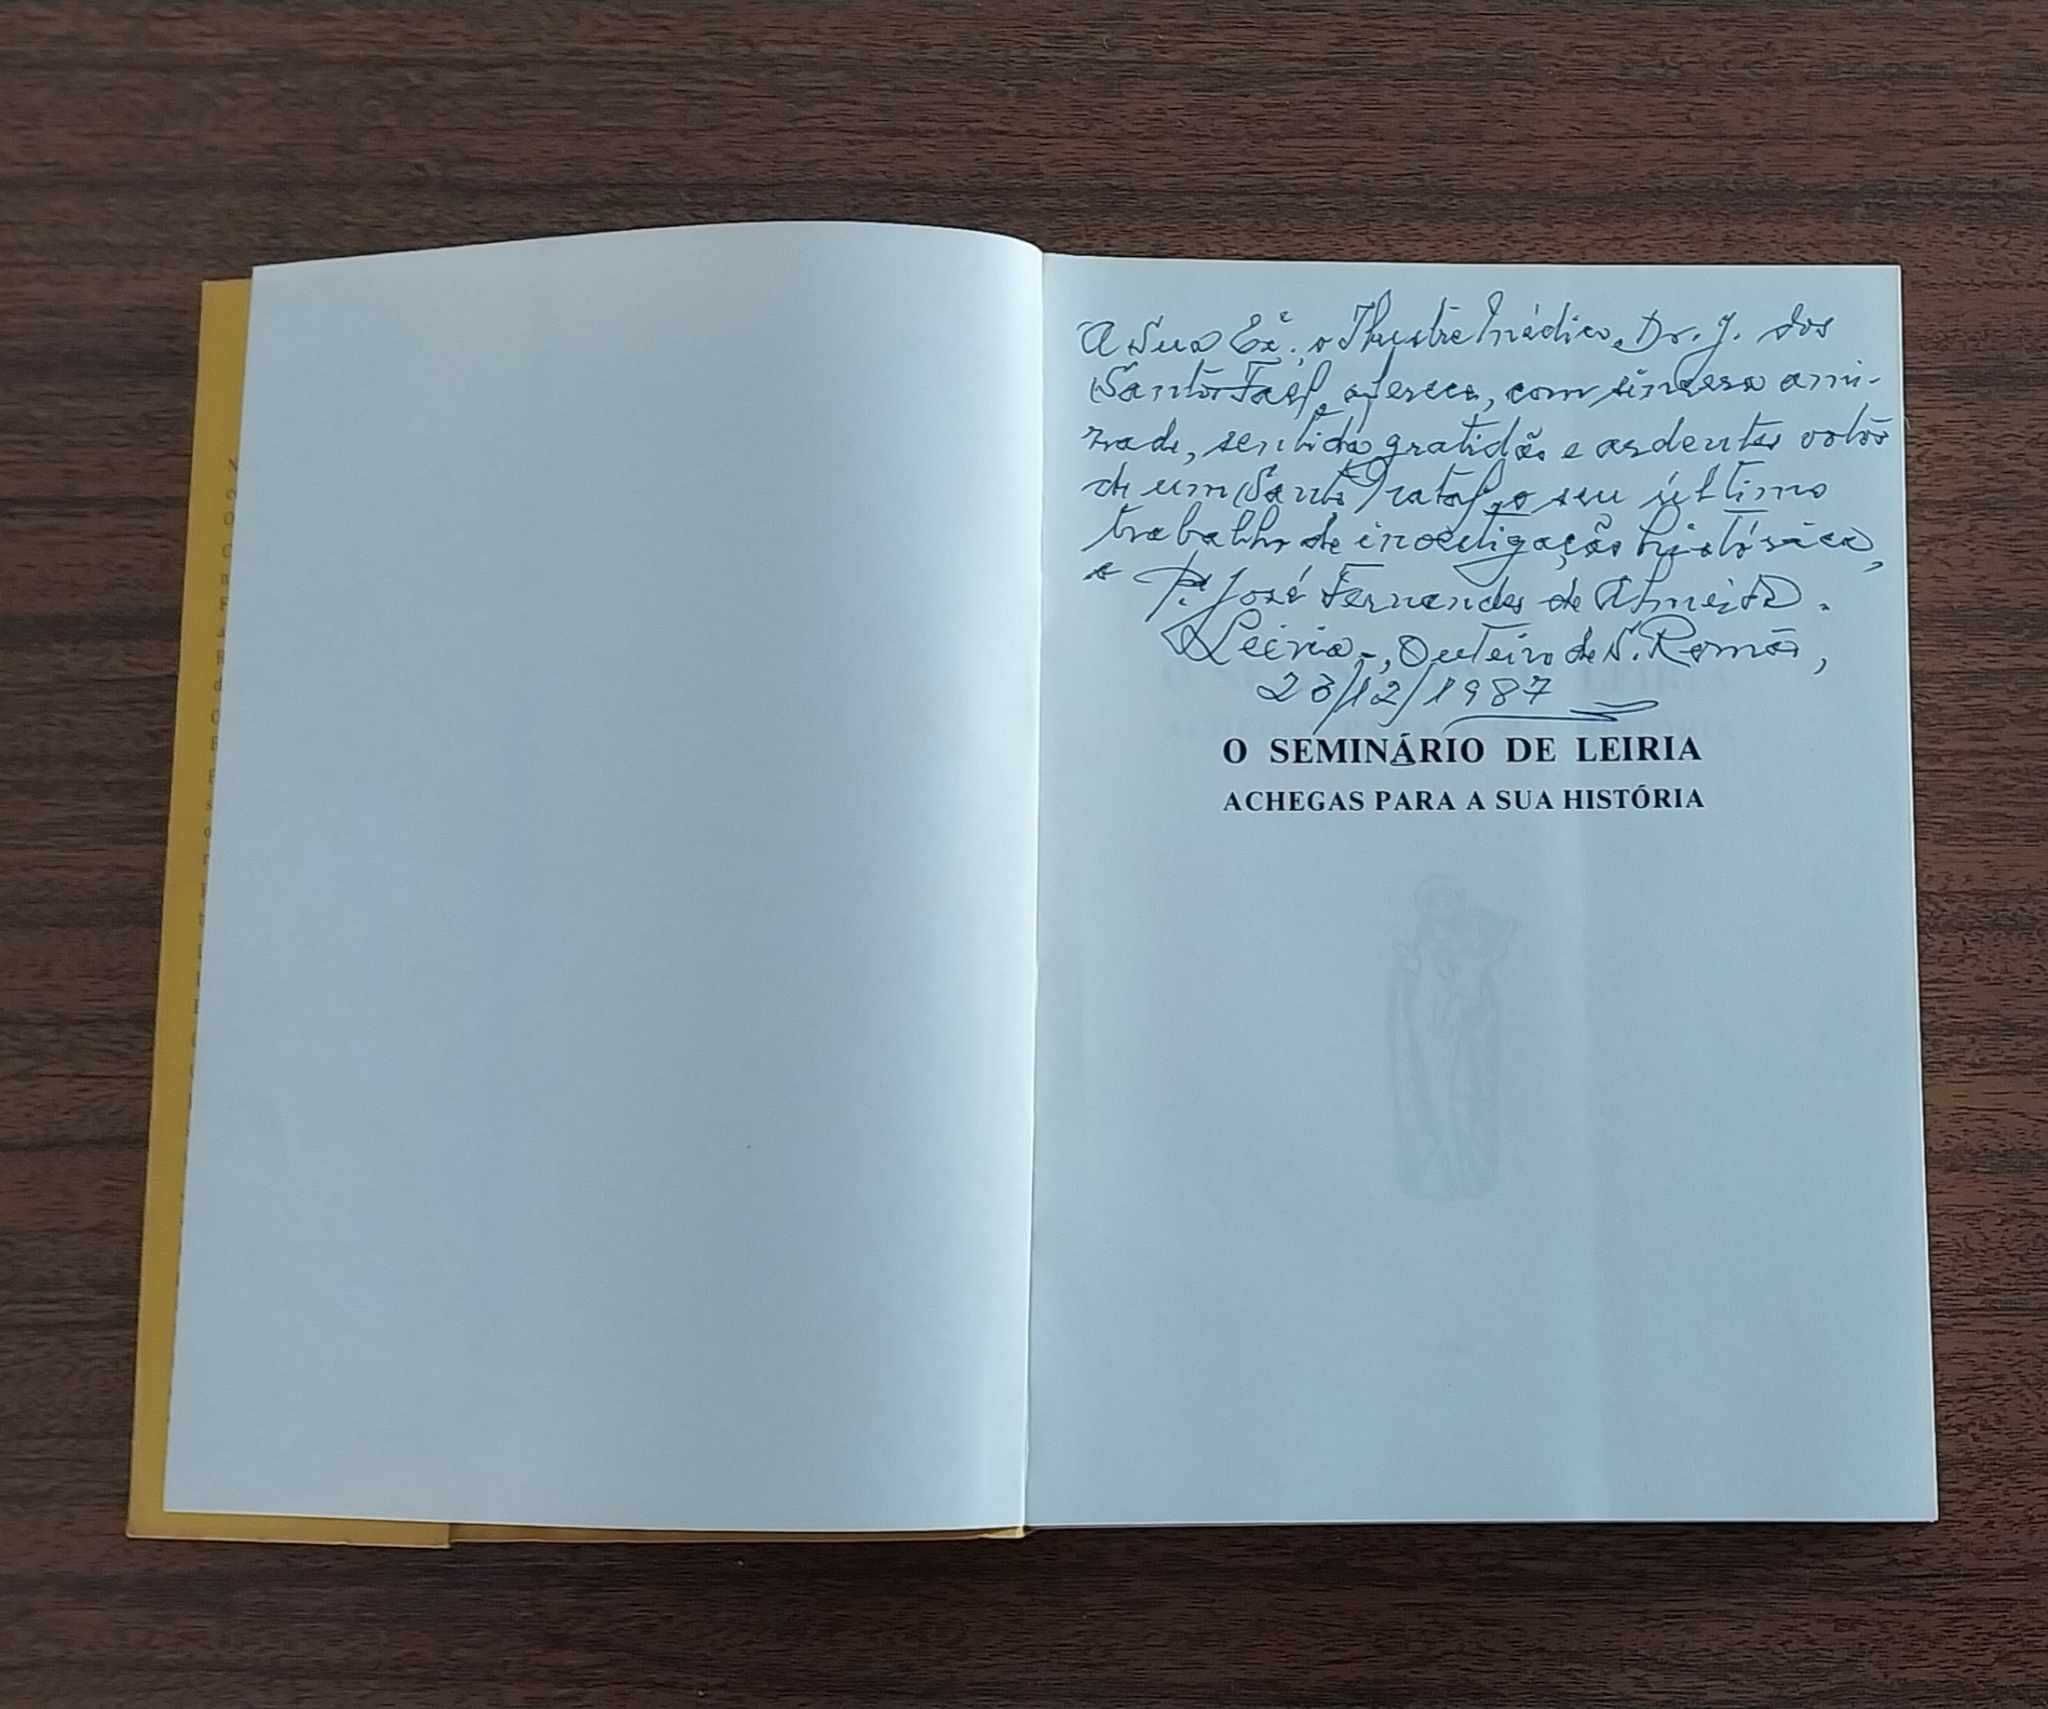 RARO Livro "O Seminário de Leiria - Achegas para a sua História" 1987